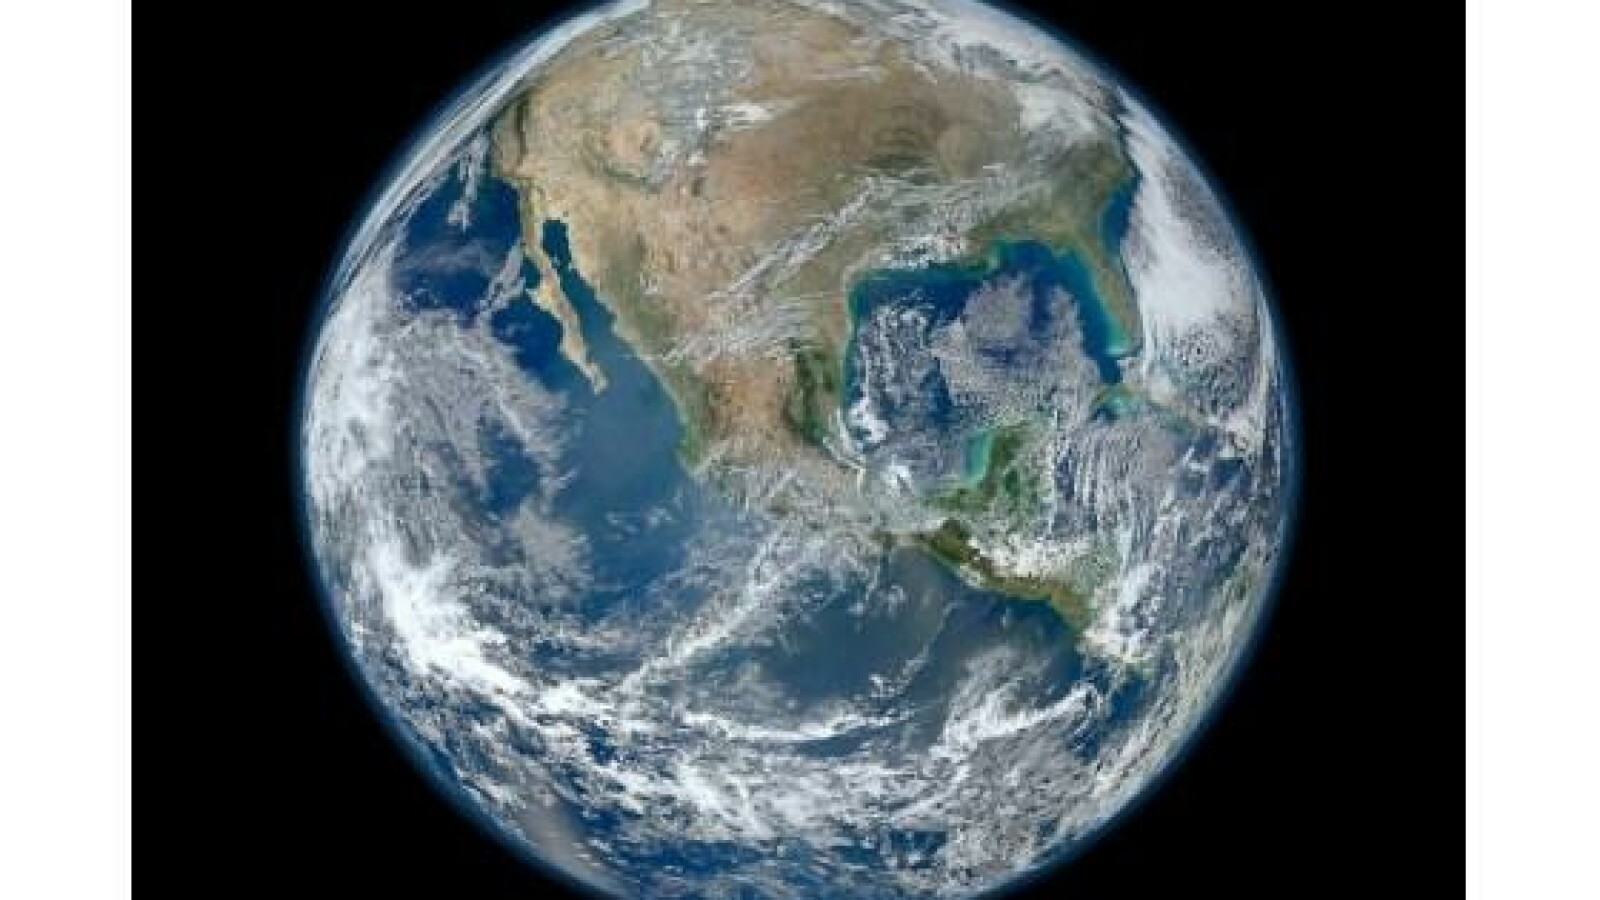 Hochauflösend: Die Erde vom Weltraum aus gesehen - NETZWELT